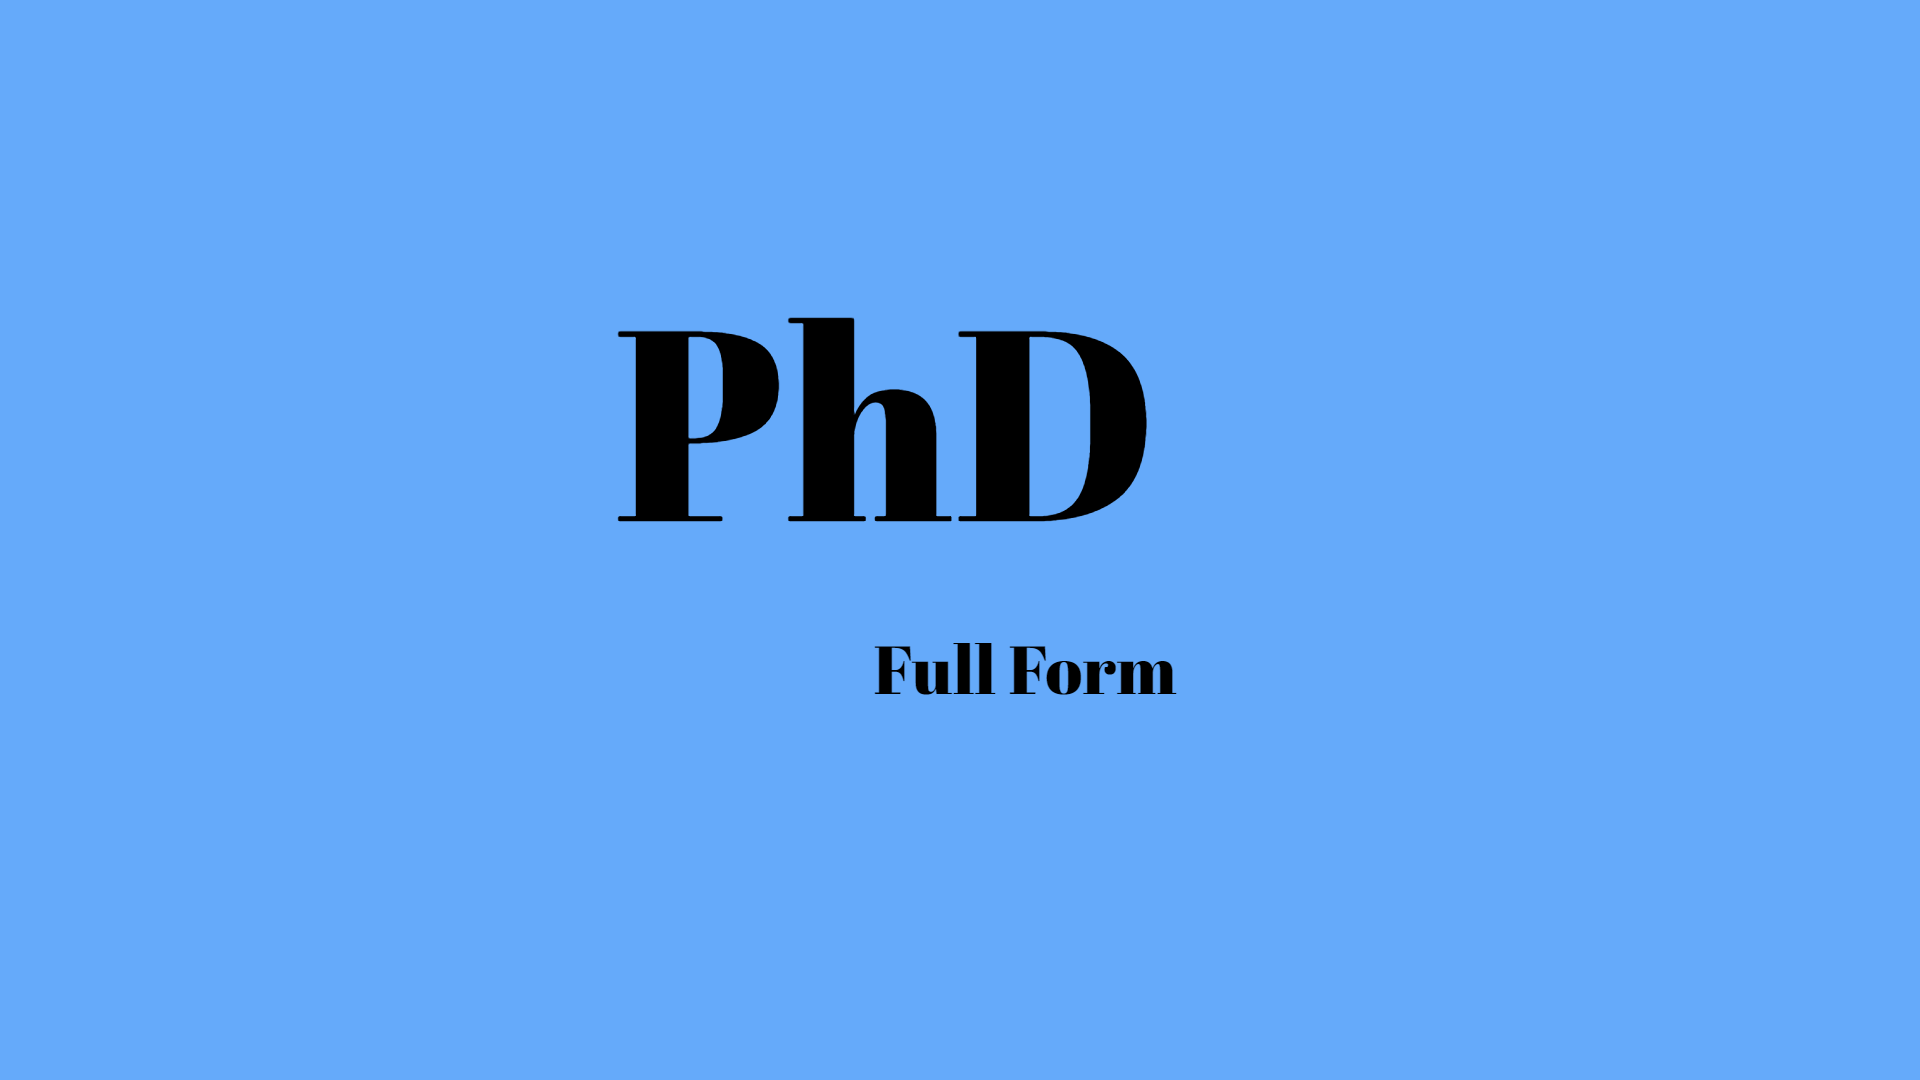 PhD full form